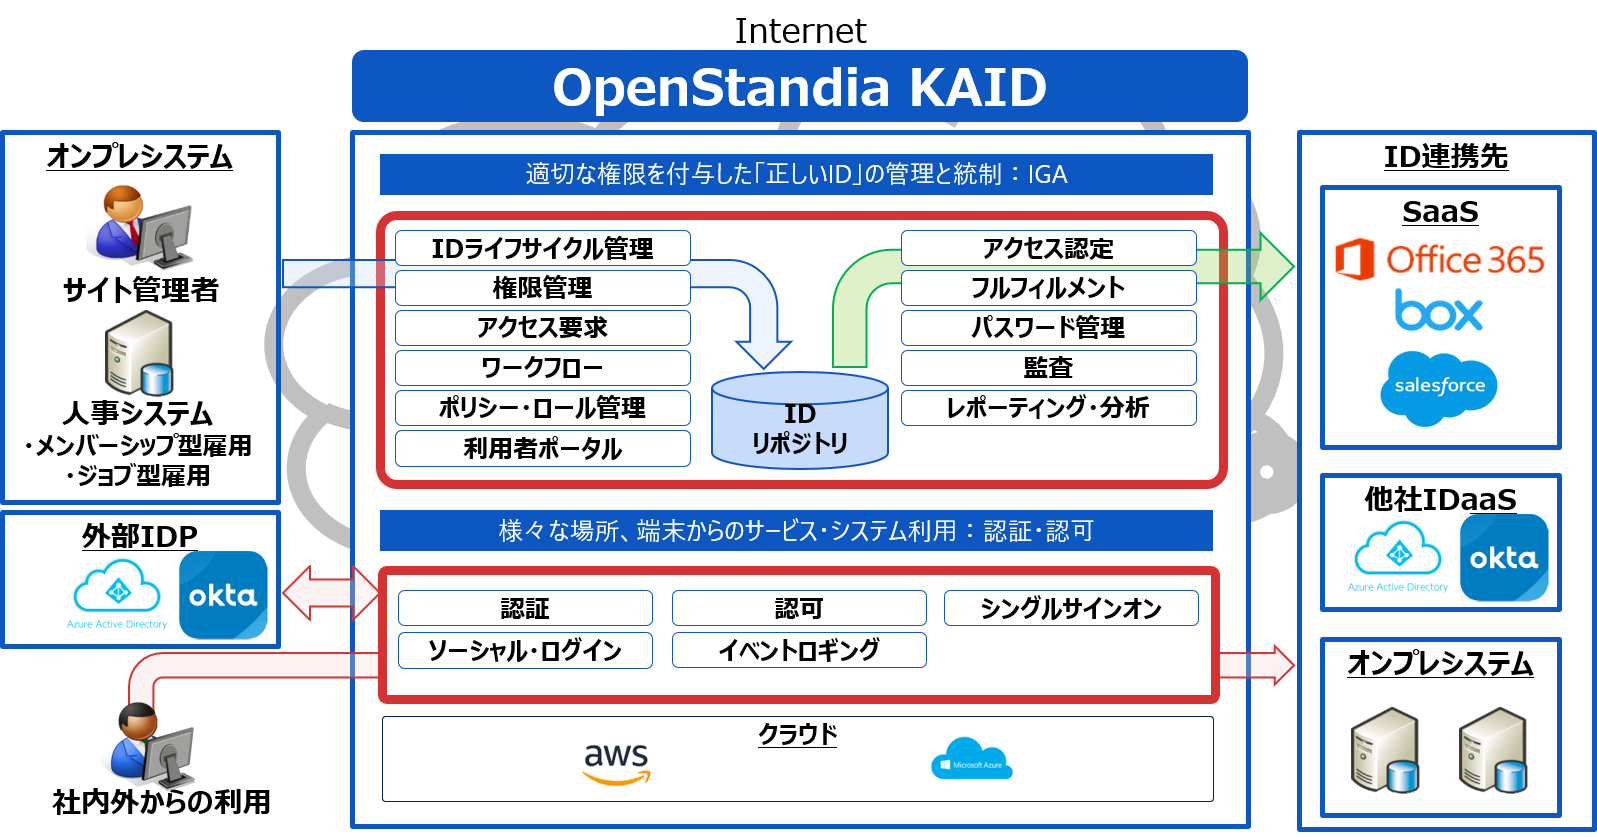 「OpenStandia KAID」の全体イメージ